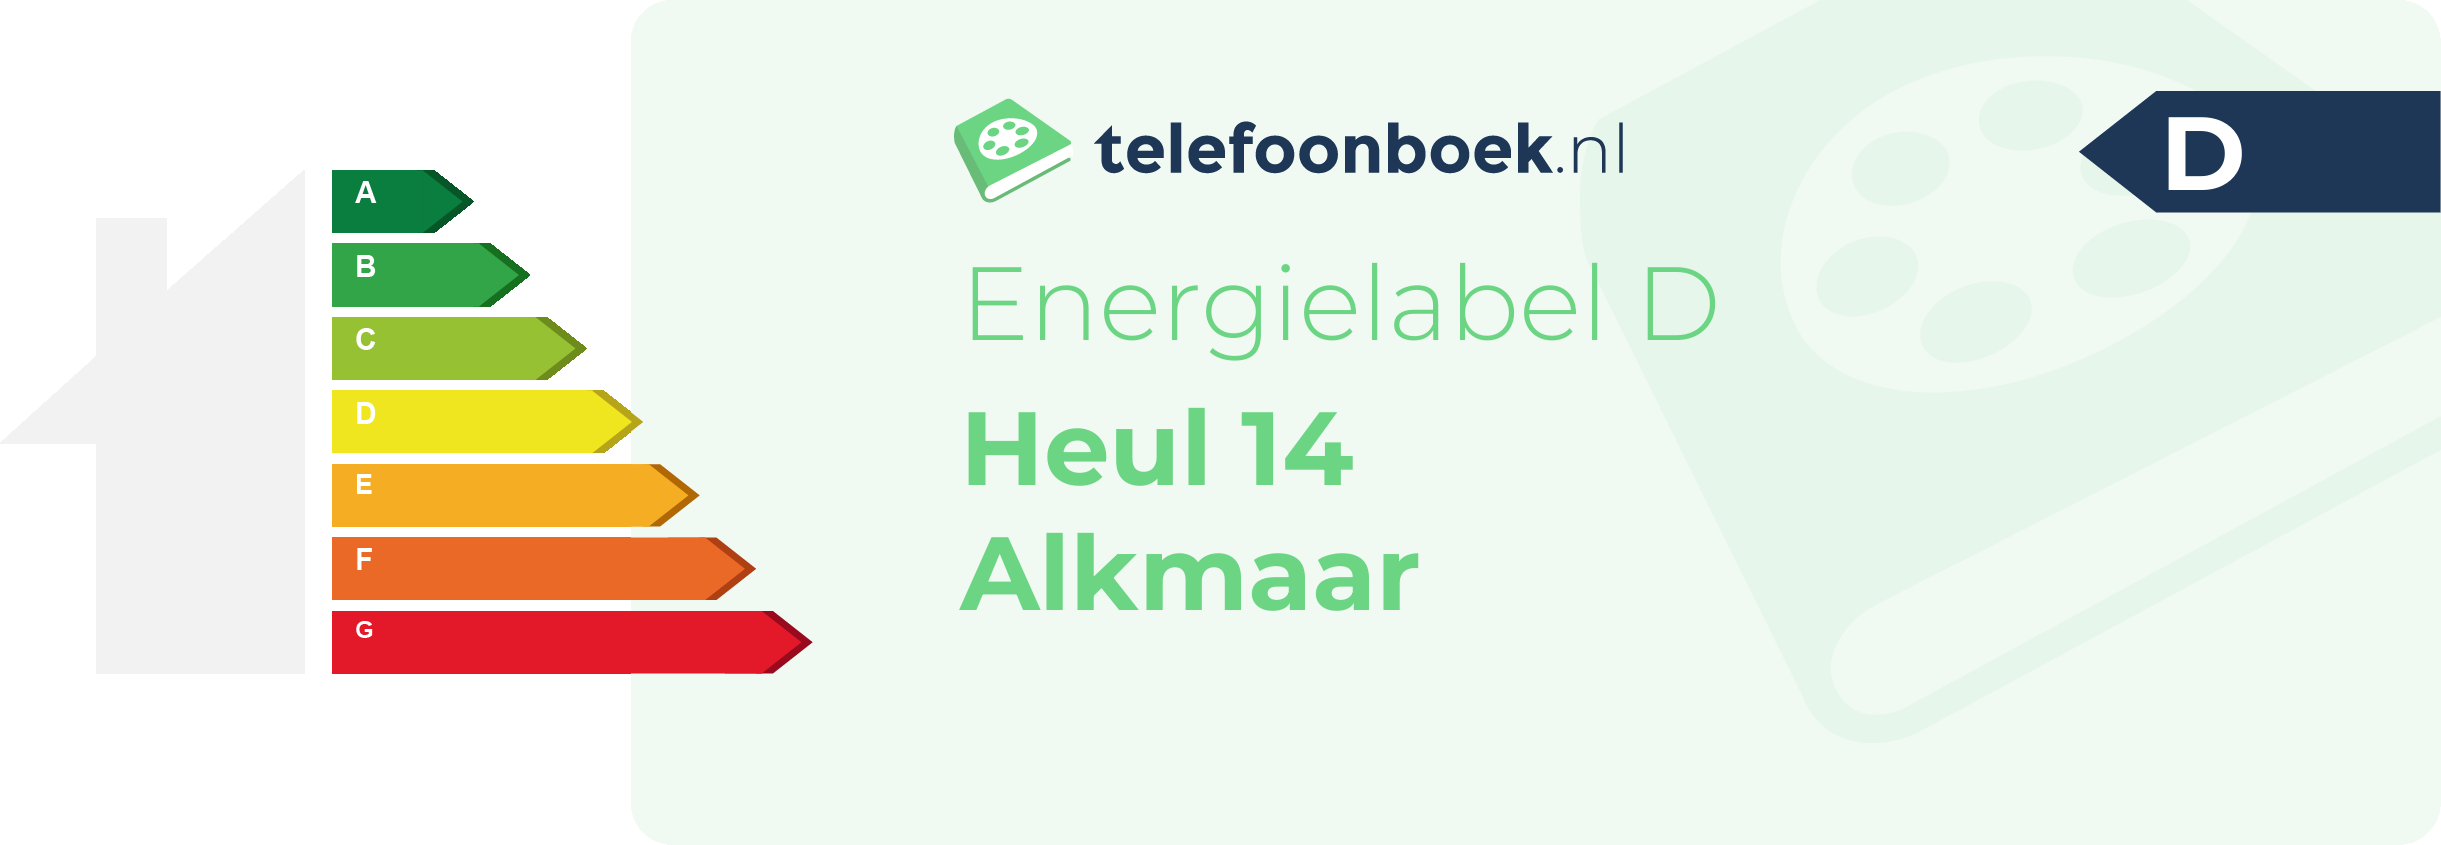 Energielabel Heul 14 Alkmaar